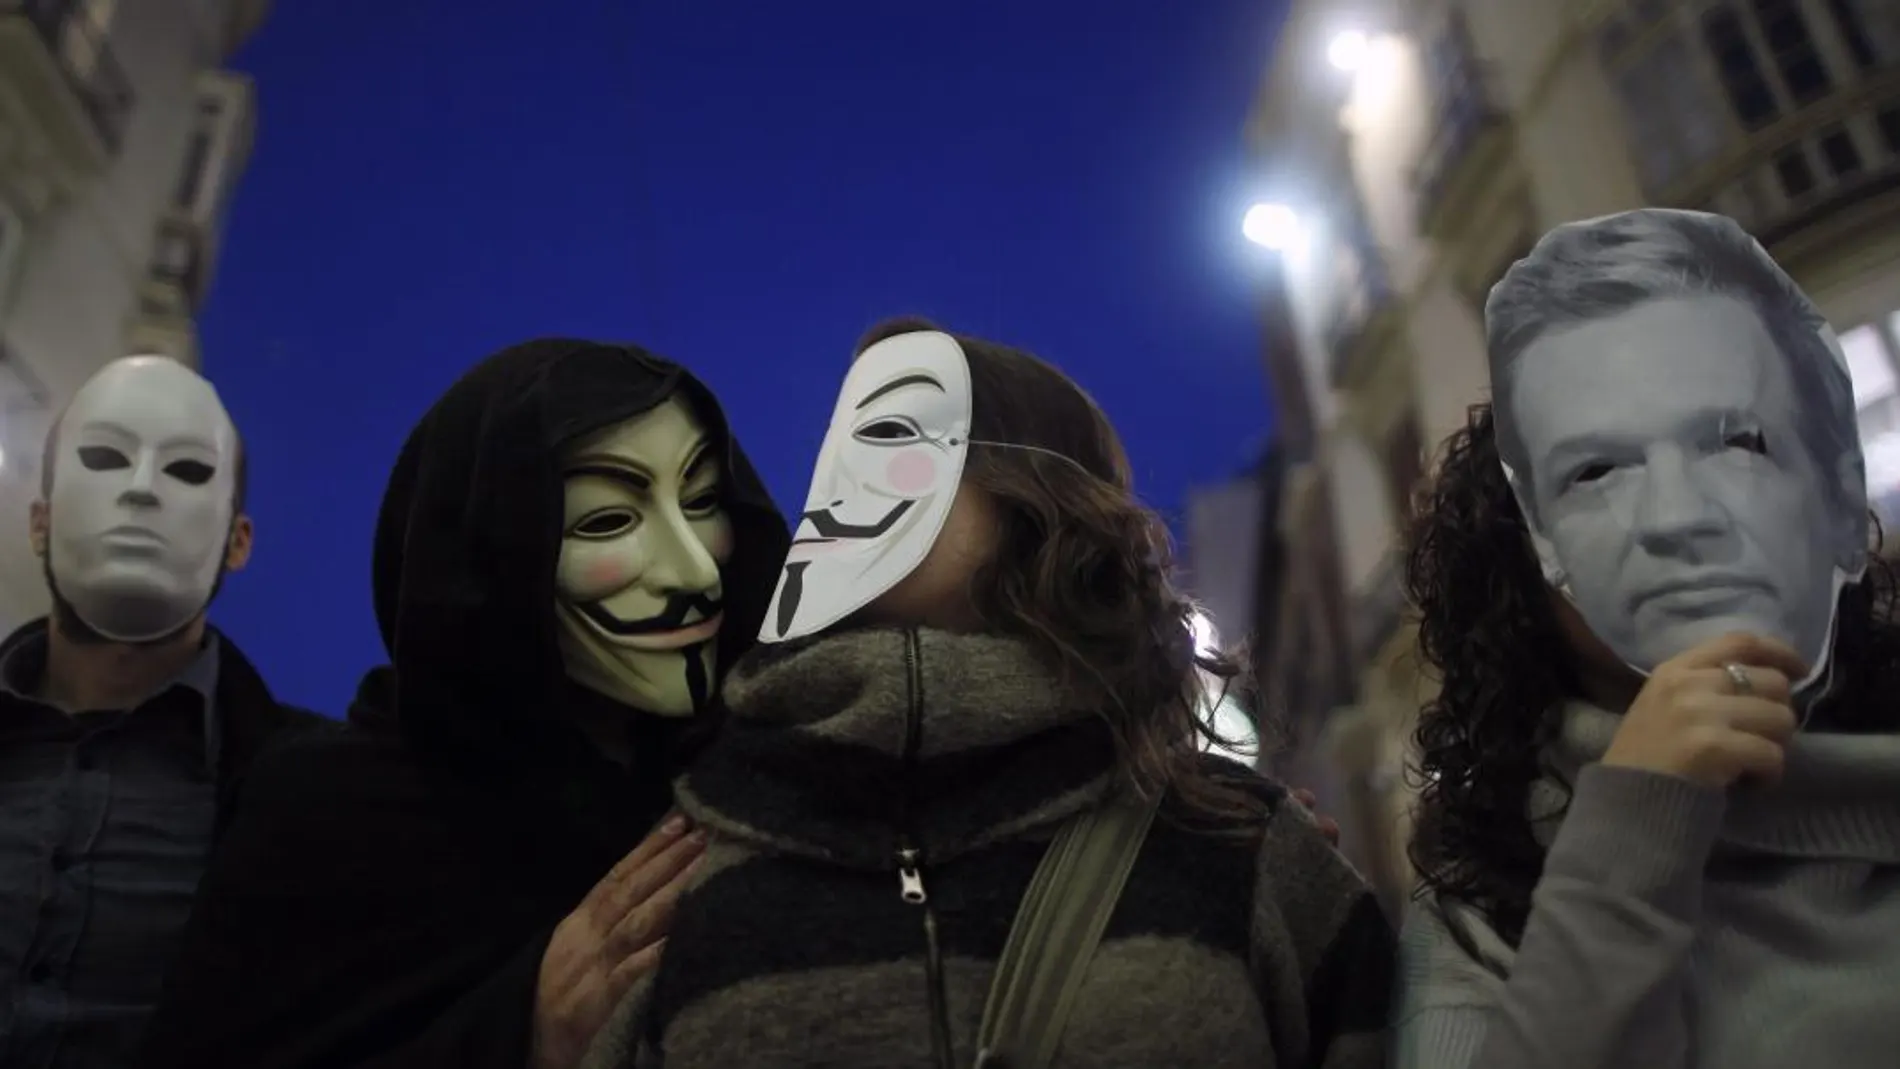 El grupo La Nueve, vinculado a la red Anonymous ha asegurado que ha accedido a más de 41,7 millones de correos y de 300.000 datos personales